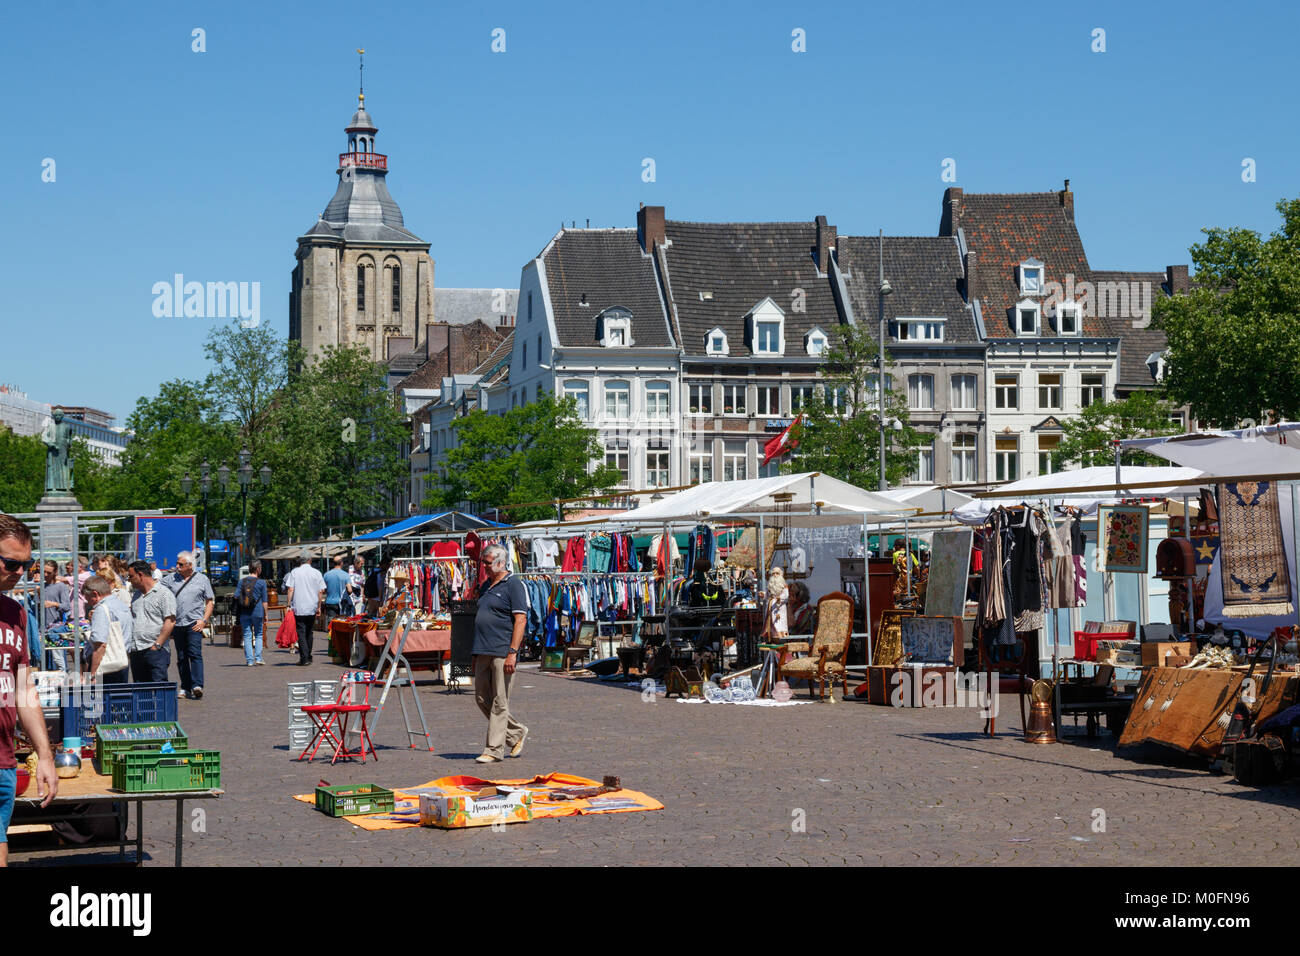 Il "Markt" (piazza del mercato), affollato di gente e di bancarelle di una diversità di merci in una giornata di sole, Maastricht, Paesi Bassi Foto Stock